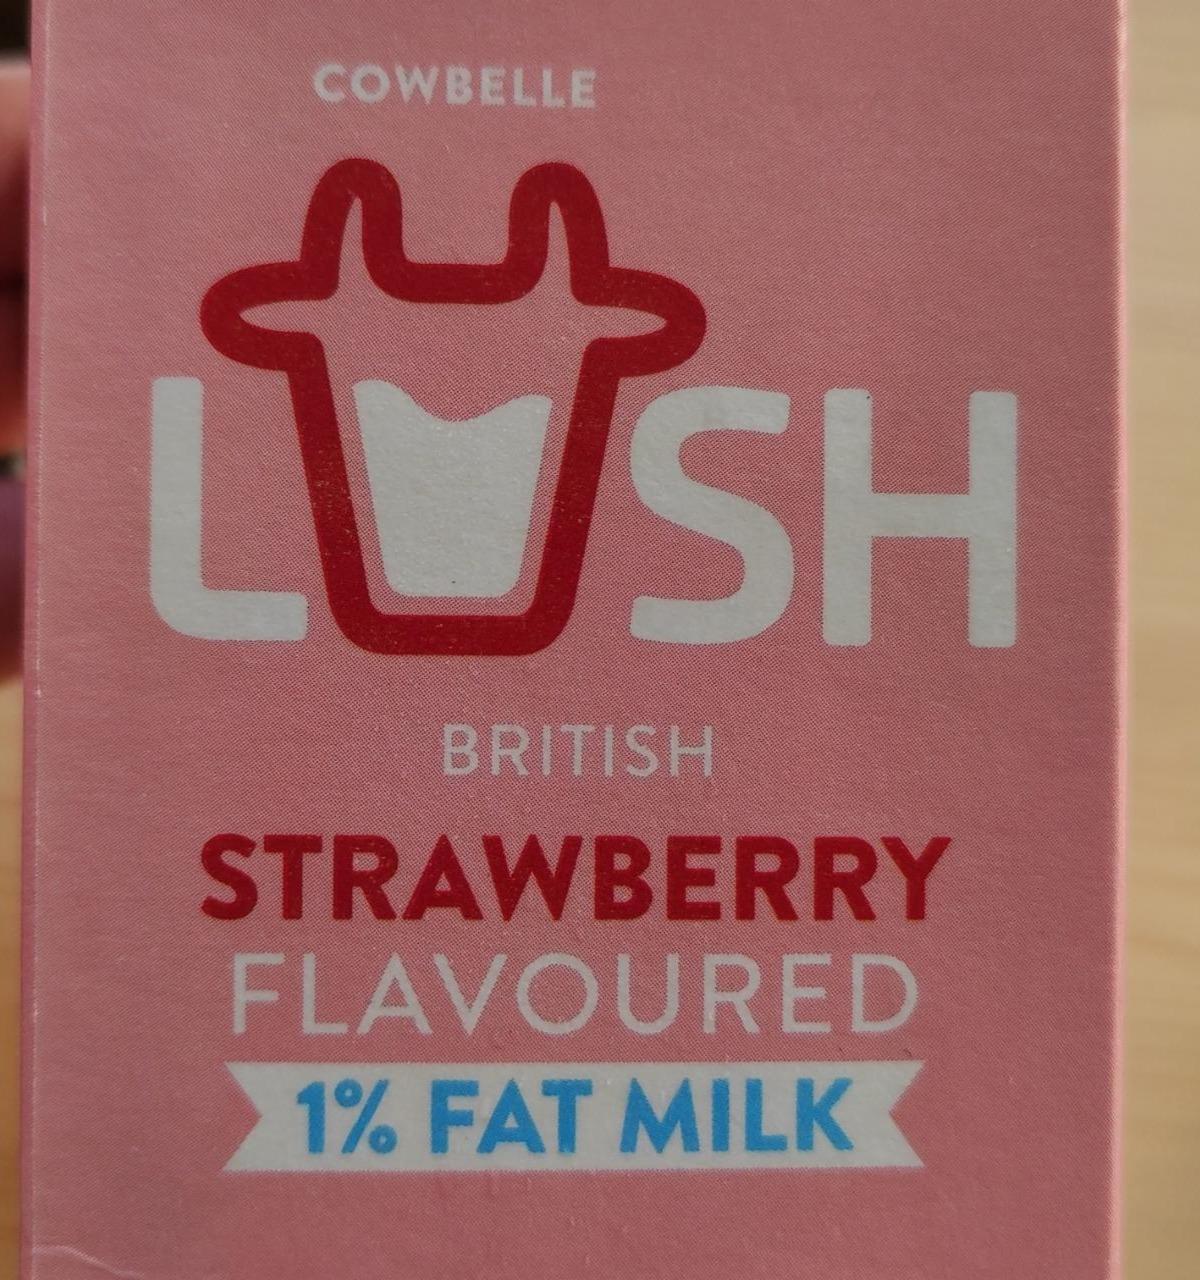 Fotografie - British Strawberry Flavoured 1% Fat Milk Cowbelle Lush